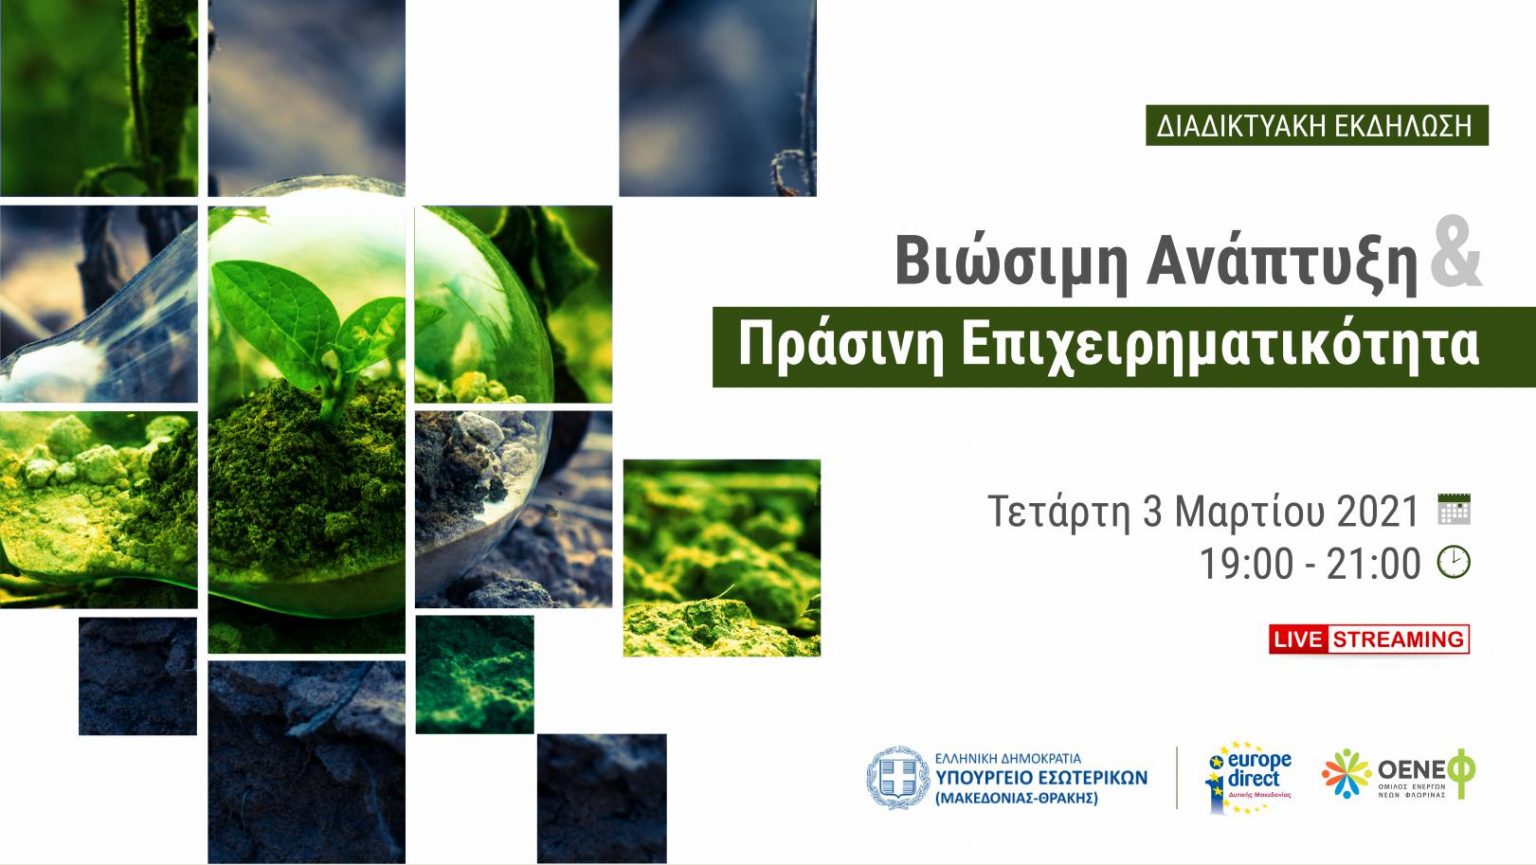 Διαδικτυακή εκδήλωση: Βιώσιμη ανάπτυξη και Πράσινη Επιχειρηματικότητα στη Δυτική Μακεδονία, την Τετάρτη 3 Μαρτίου